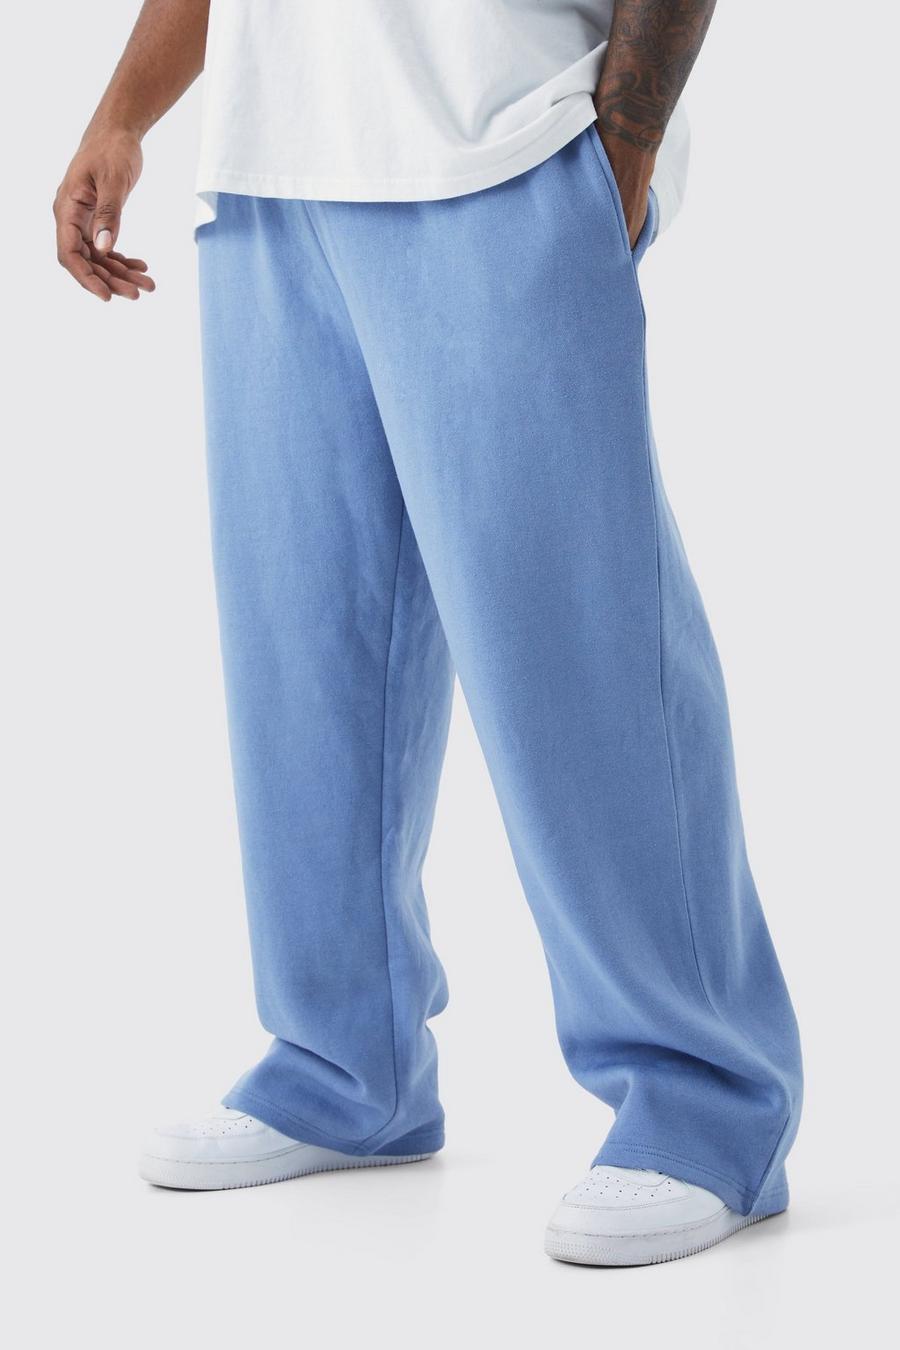 Pantaloni tuta Plus Size rilassati, Dusty blue image number 1